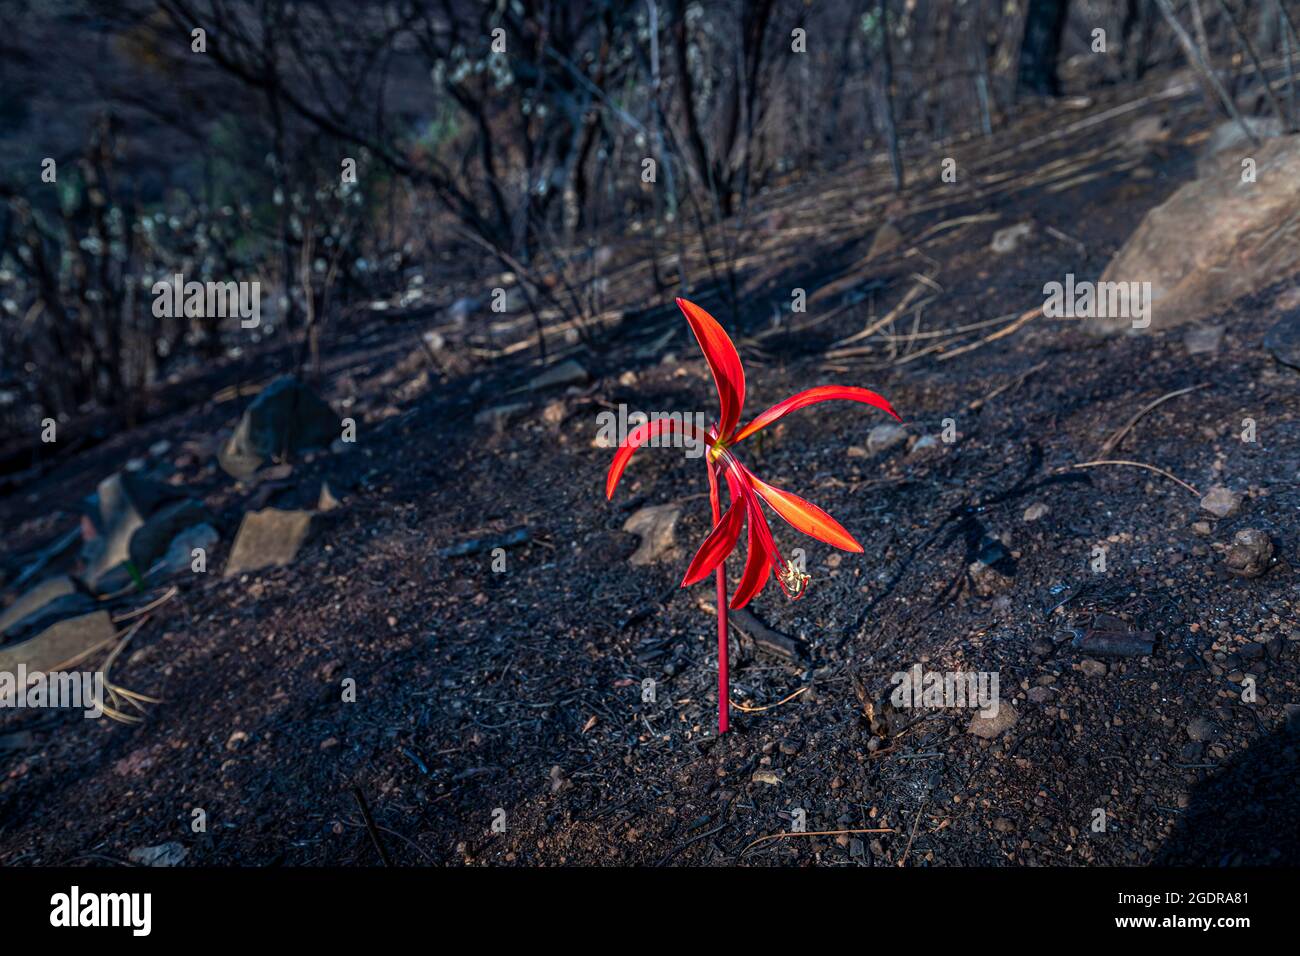 Un Lirio Azteca (Sprekelia también conocido como Lirio Jacobeo) florece entre las cenizas de un reciente incendio cerca de Morelia, Michoacán, México. Foto de stock